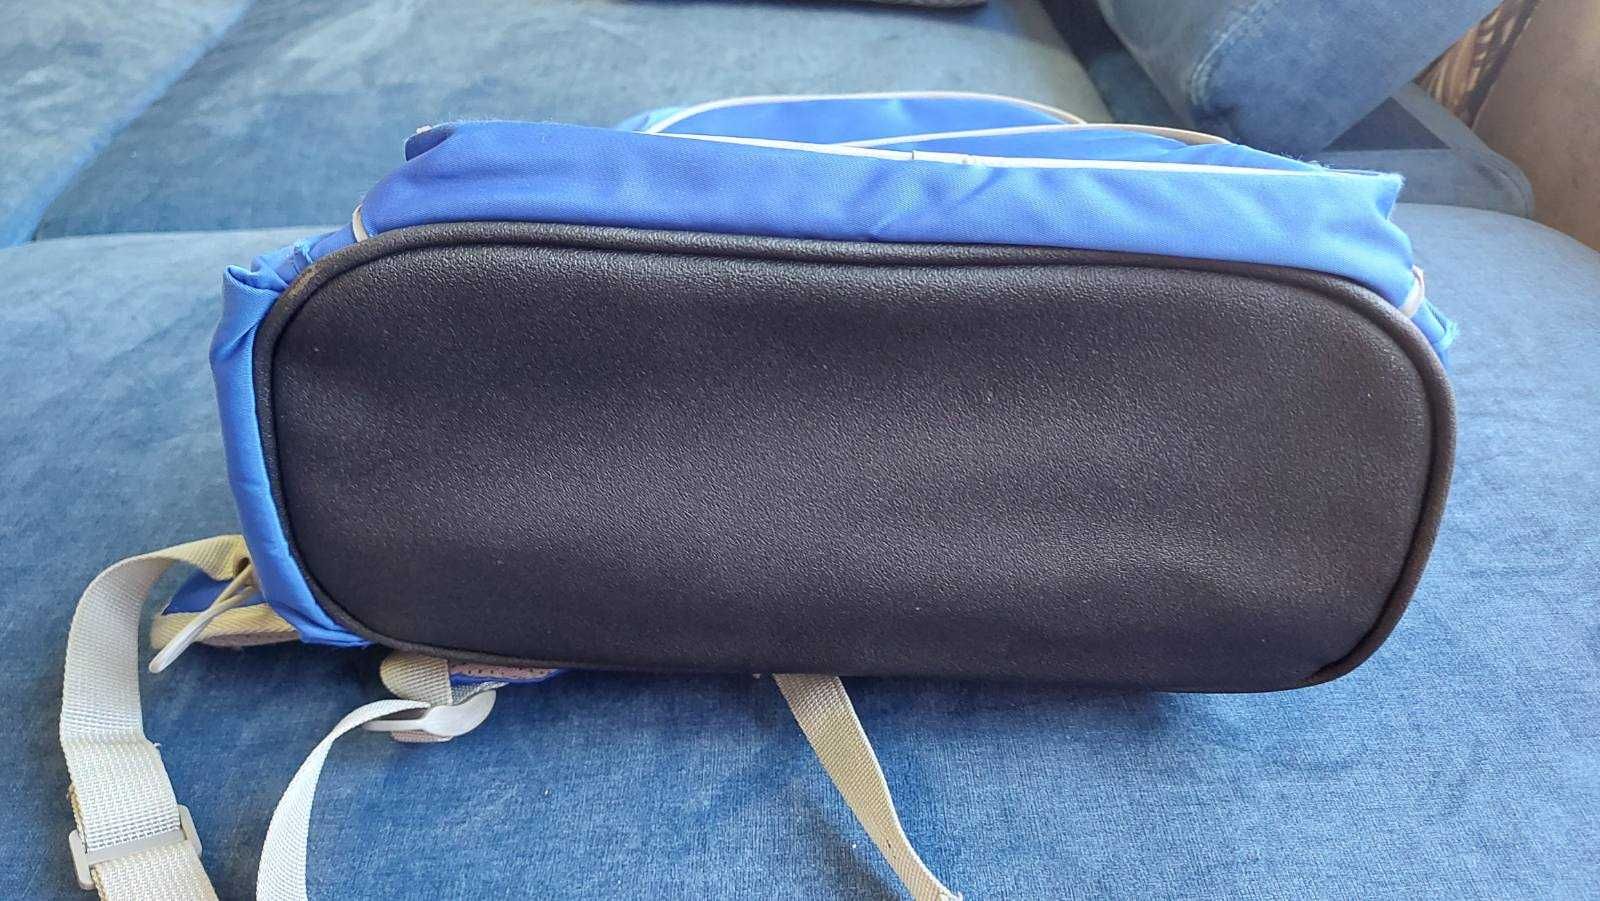 Рюкзак Kite серії Smart K. Школьный, рюкзак-портфель.